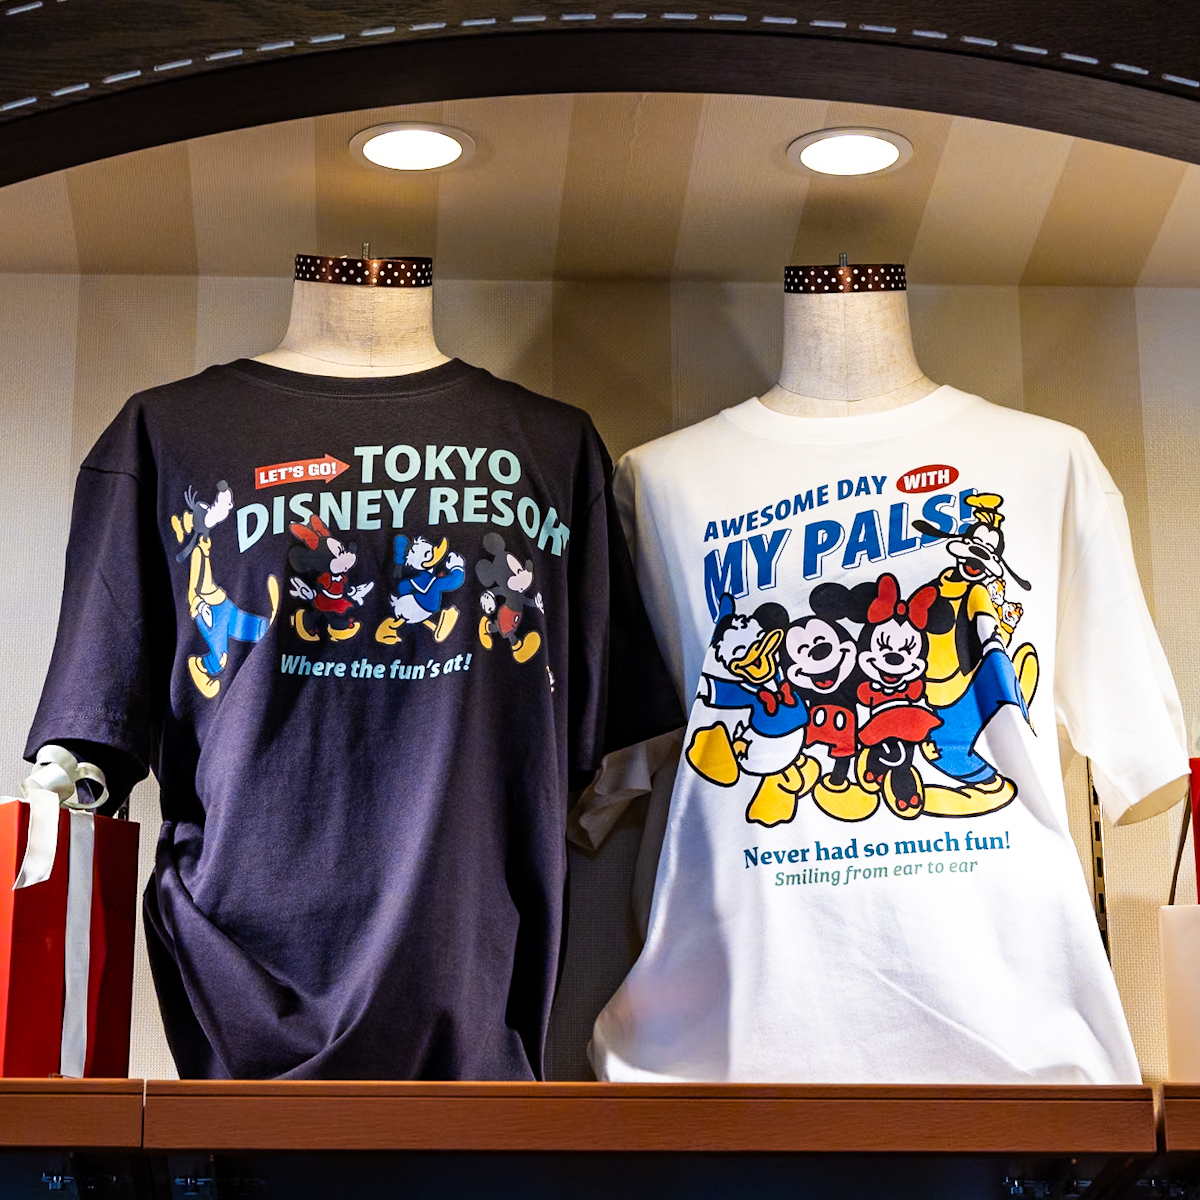 東京ディズニーリゾート はじける笑顔と元気いっぱいの「ミッキー&フレンズ」グッズ・お土産